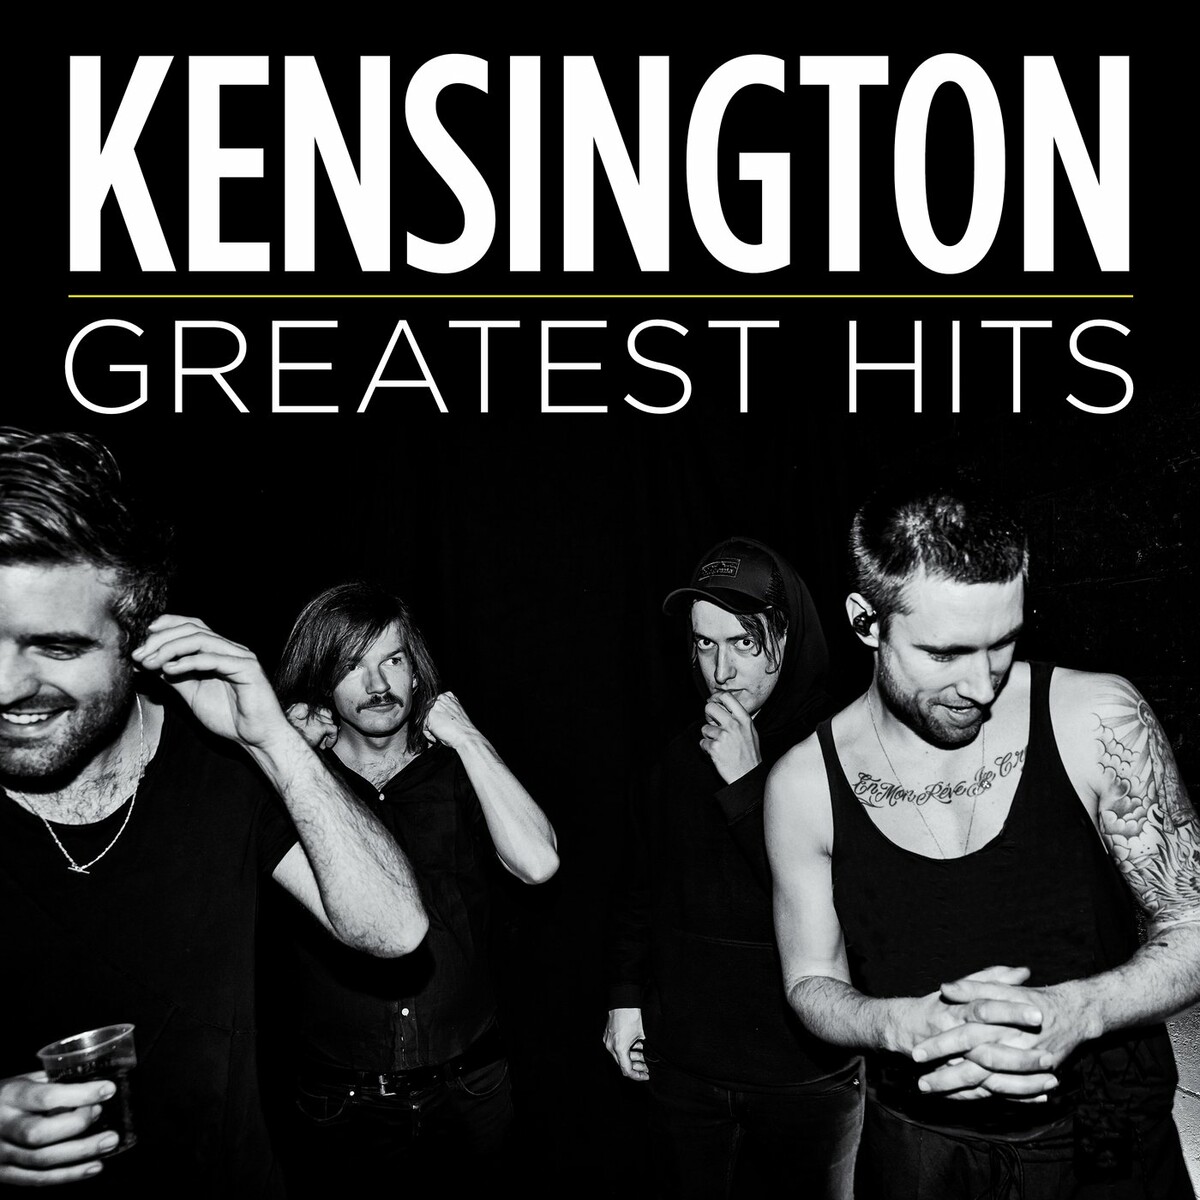 Kensington - 2 albums - Greatest hits - Pinkpop 2017